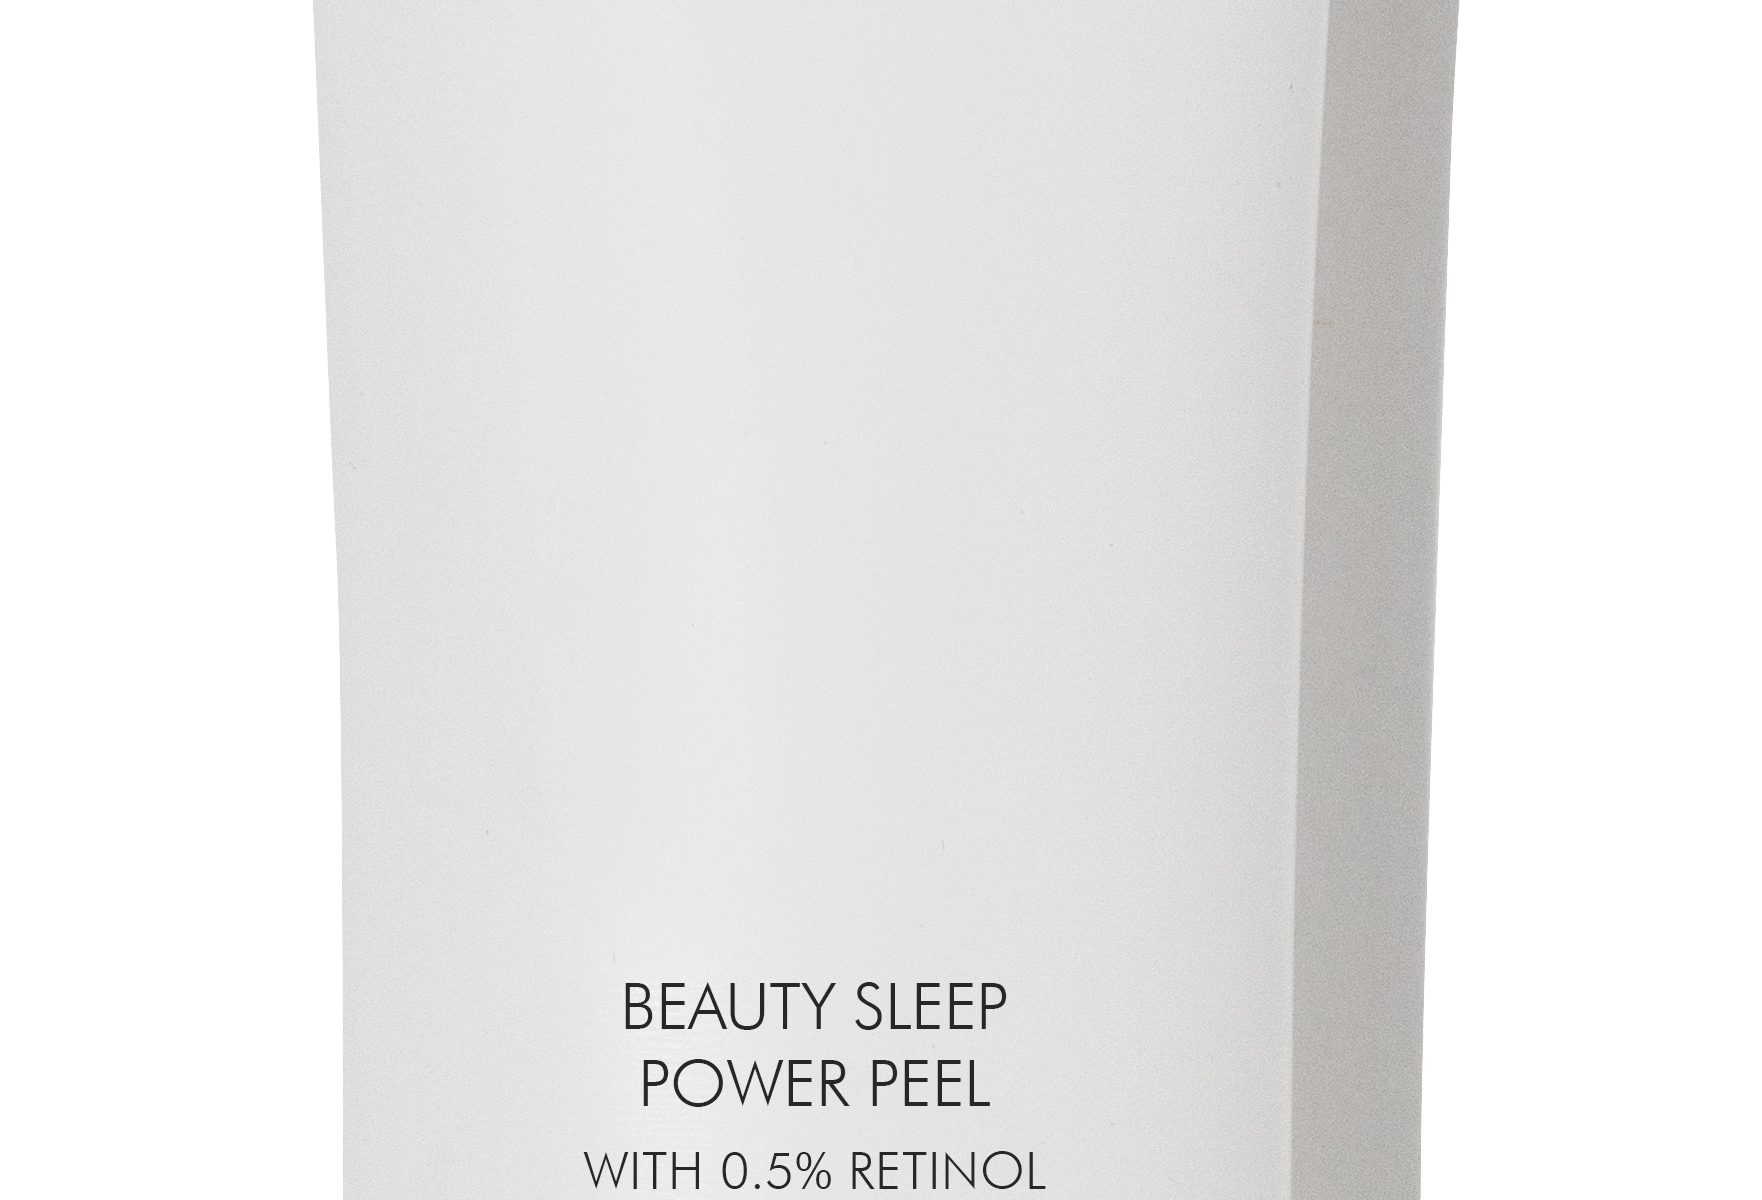 Beauty Sleep Power Peel